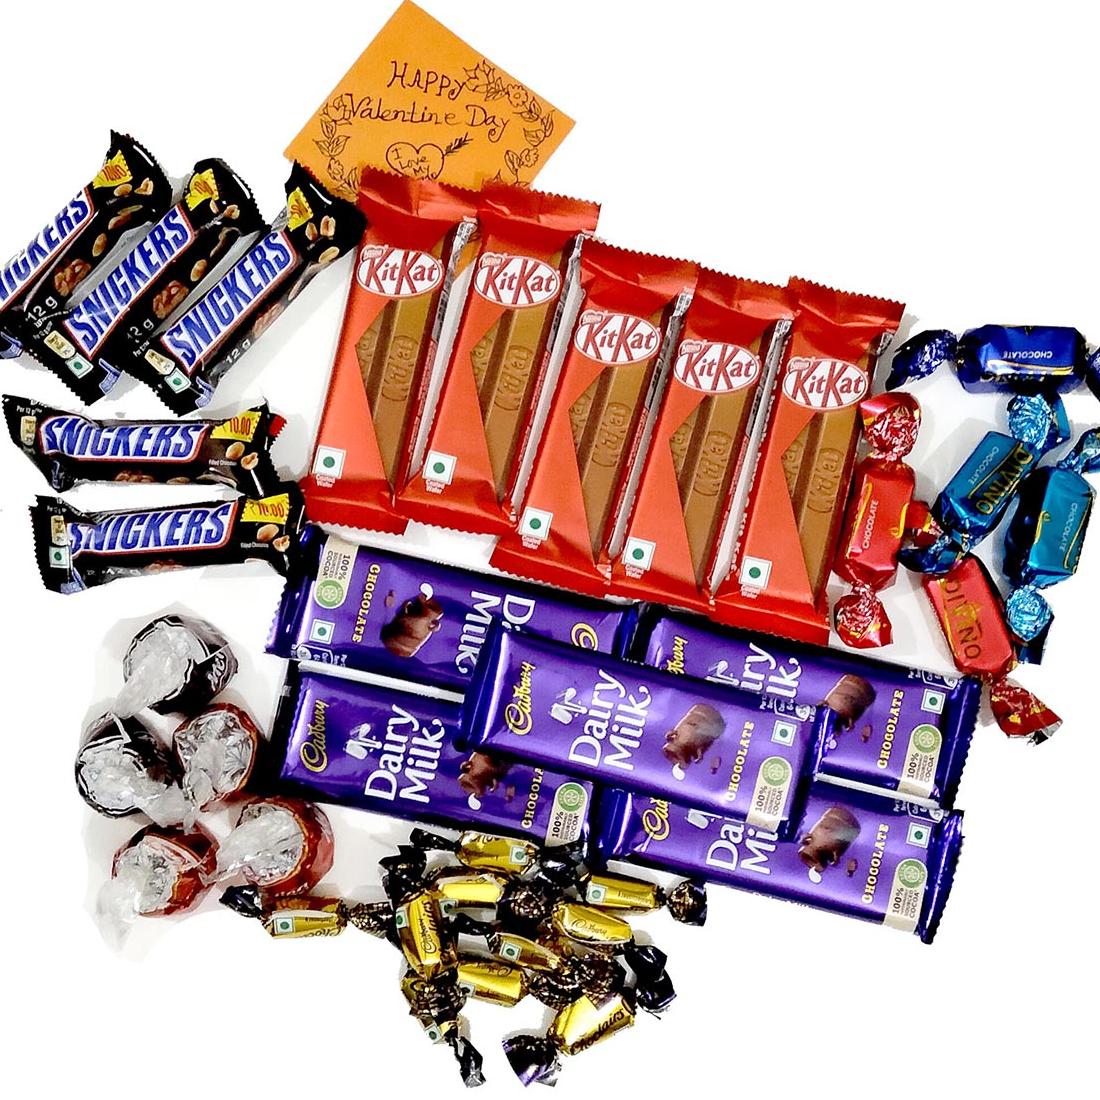 Premium-Chocolate-Special-Package-1226-2-jpg-suptadhara-product-1711742185.jpg